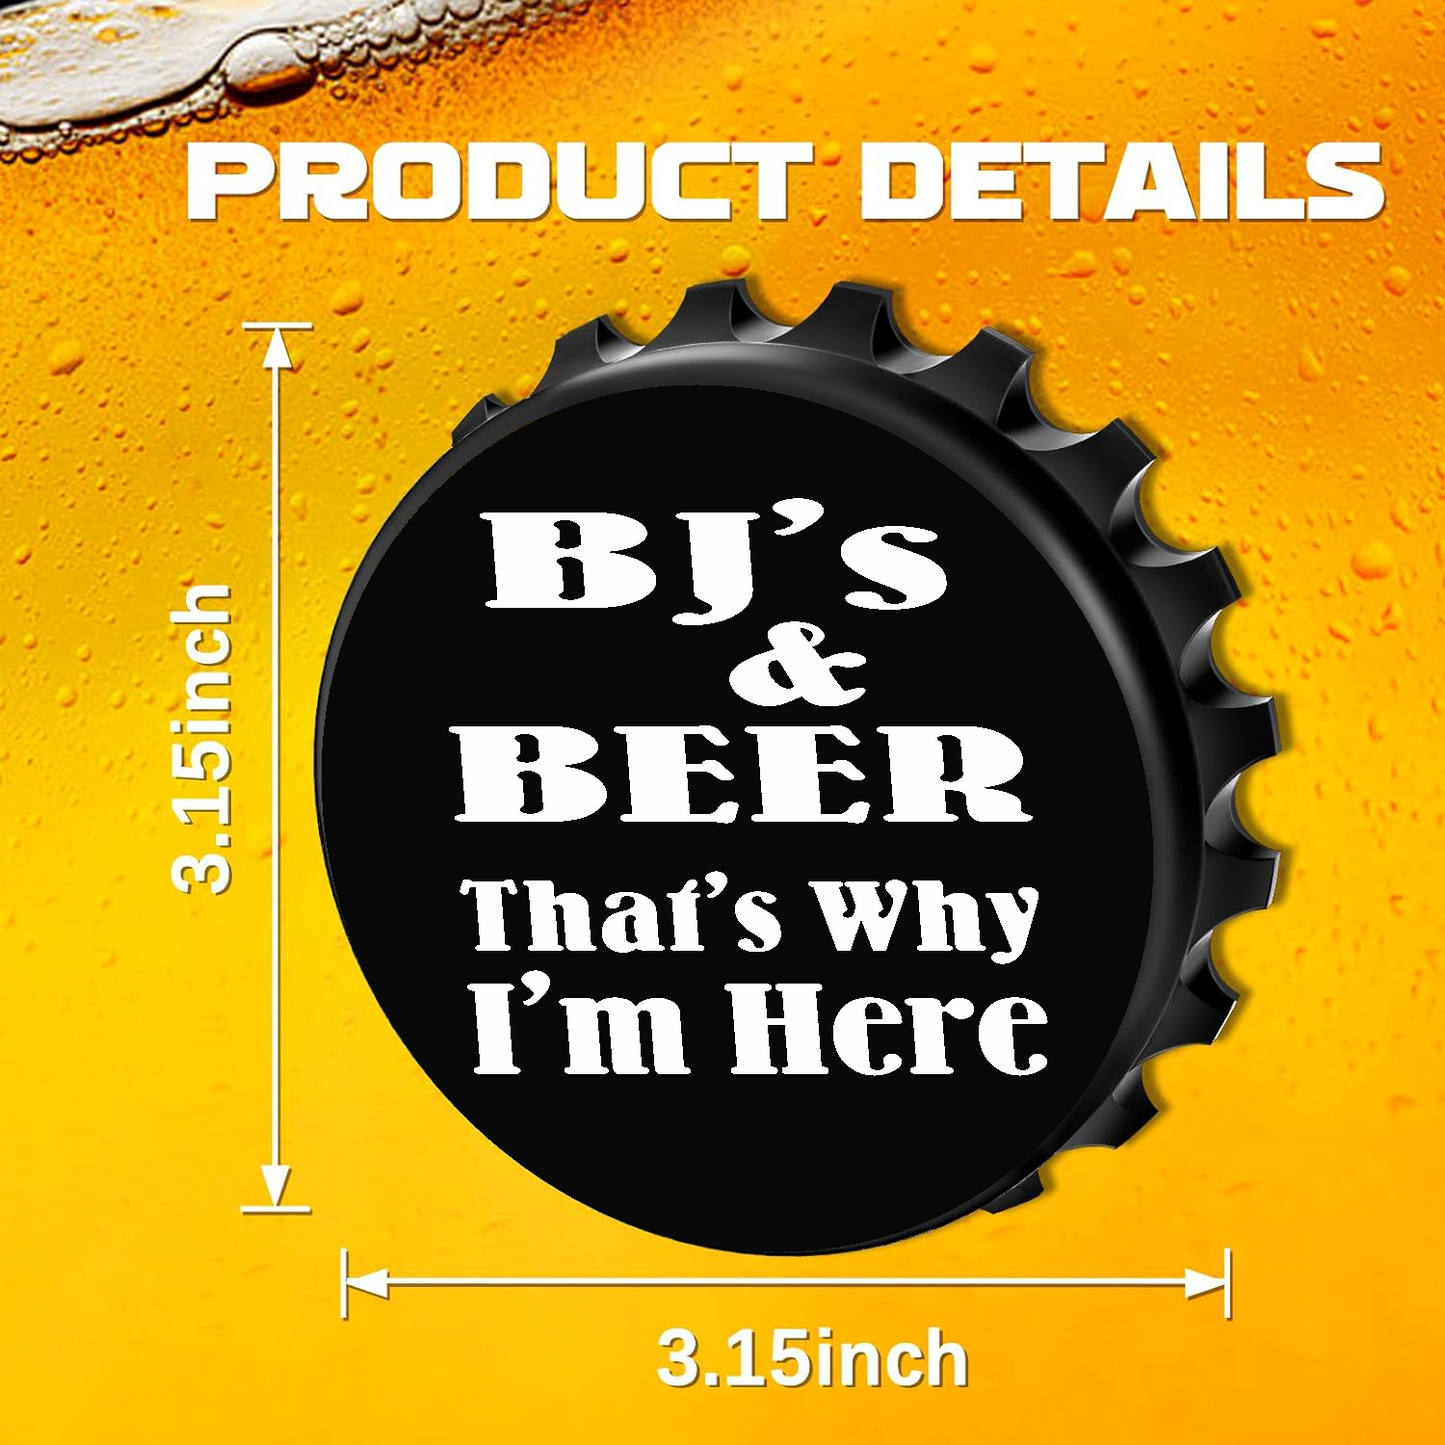 BJ's & Beer, That's Why I'm Here - Designer Beer Bottle Opener Magnet for Refrigerator, Gifts for Beer Lovers, Black